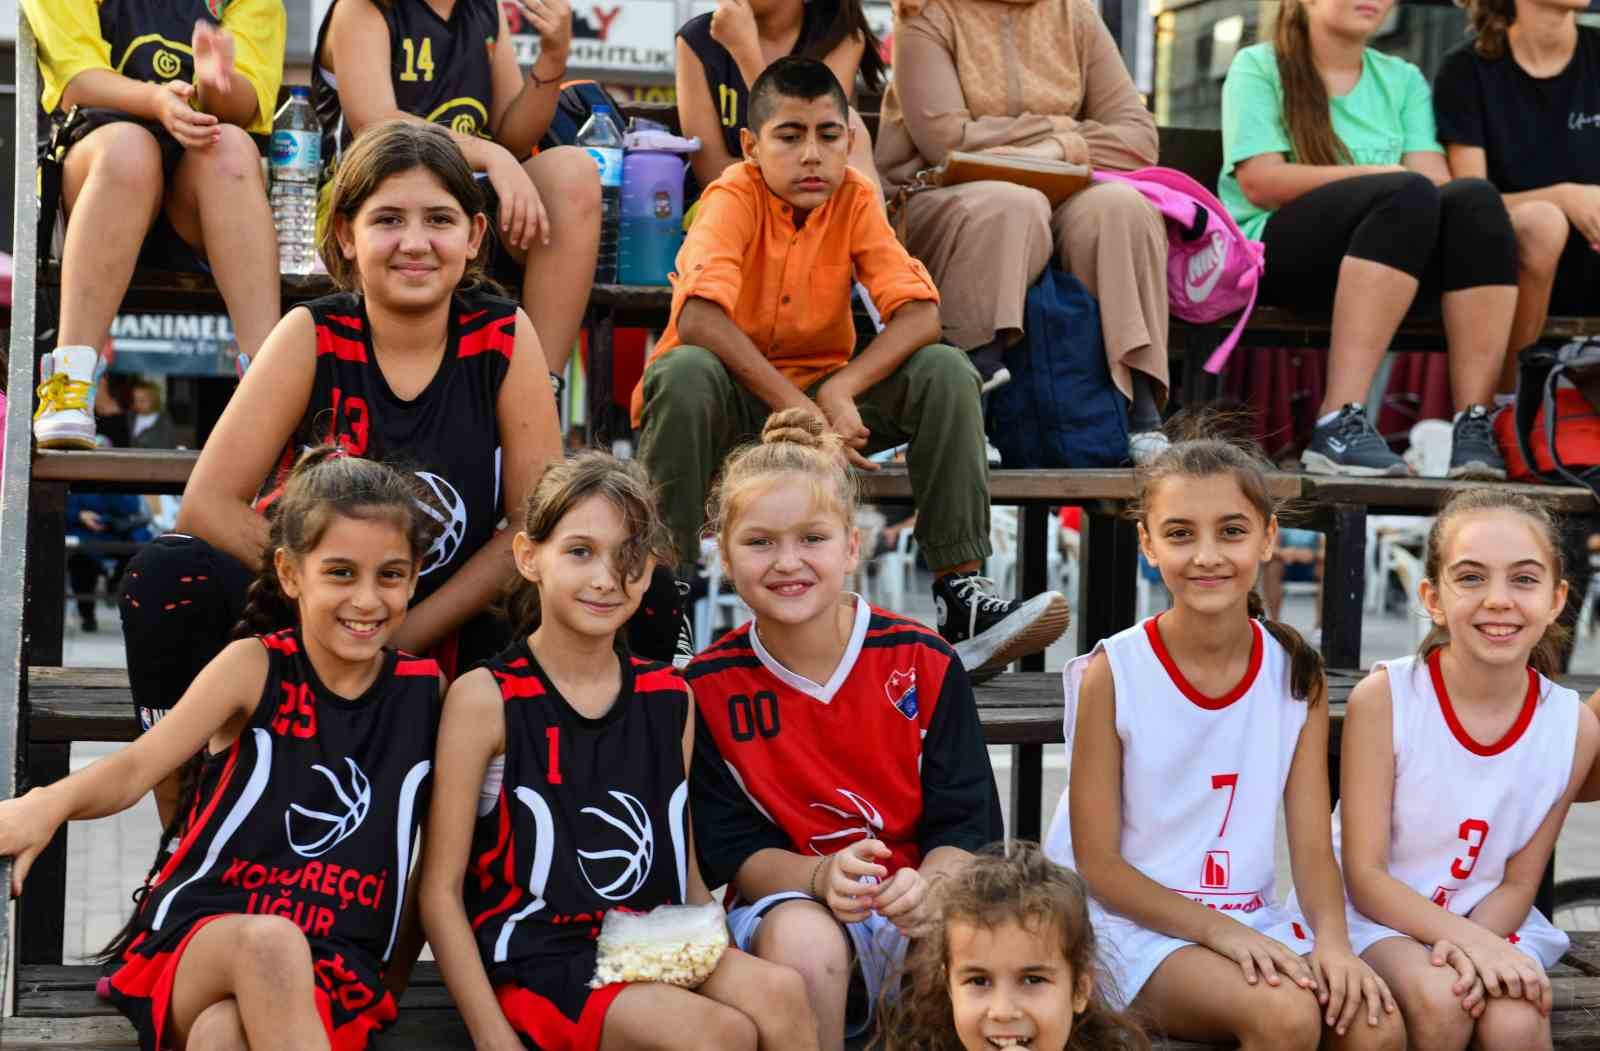 Mustafakemalpaşa’nın markası Tatlıtop Basketbol Şenlikleri başladı